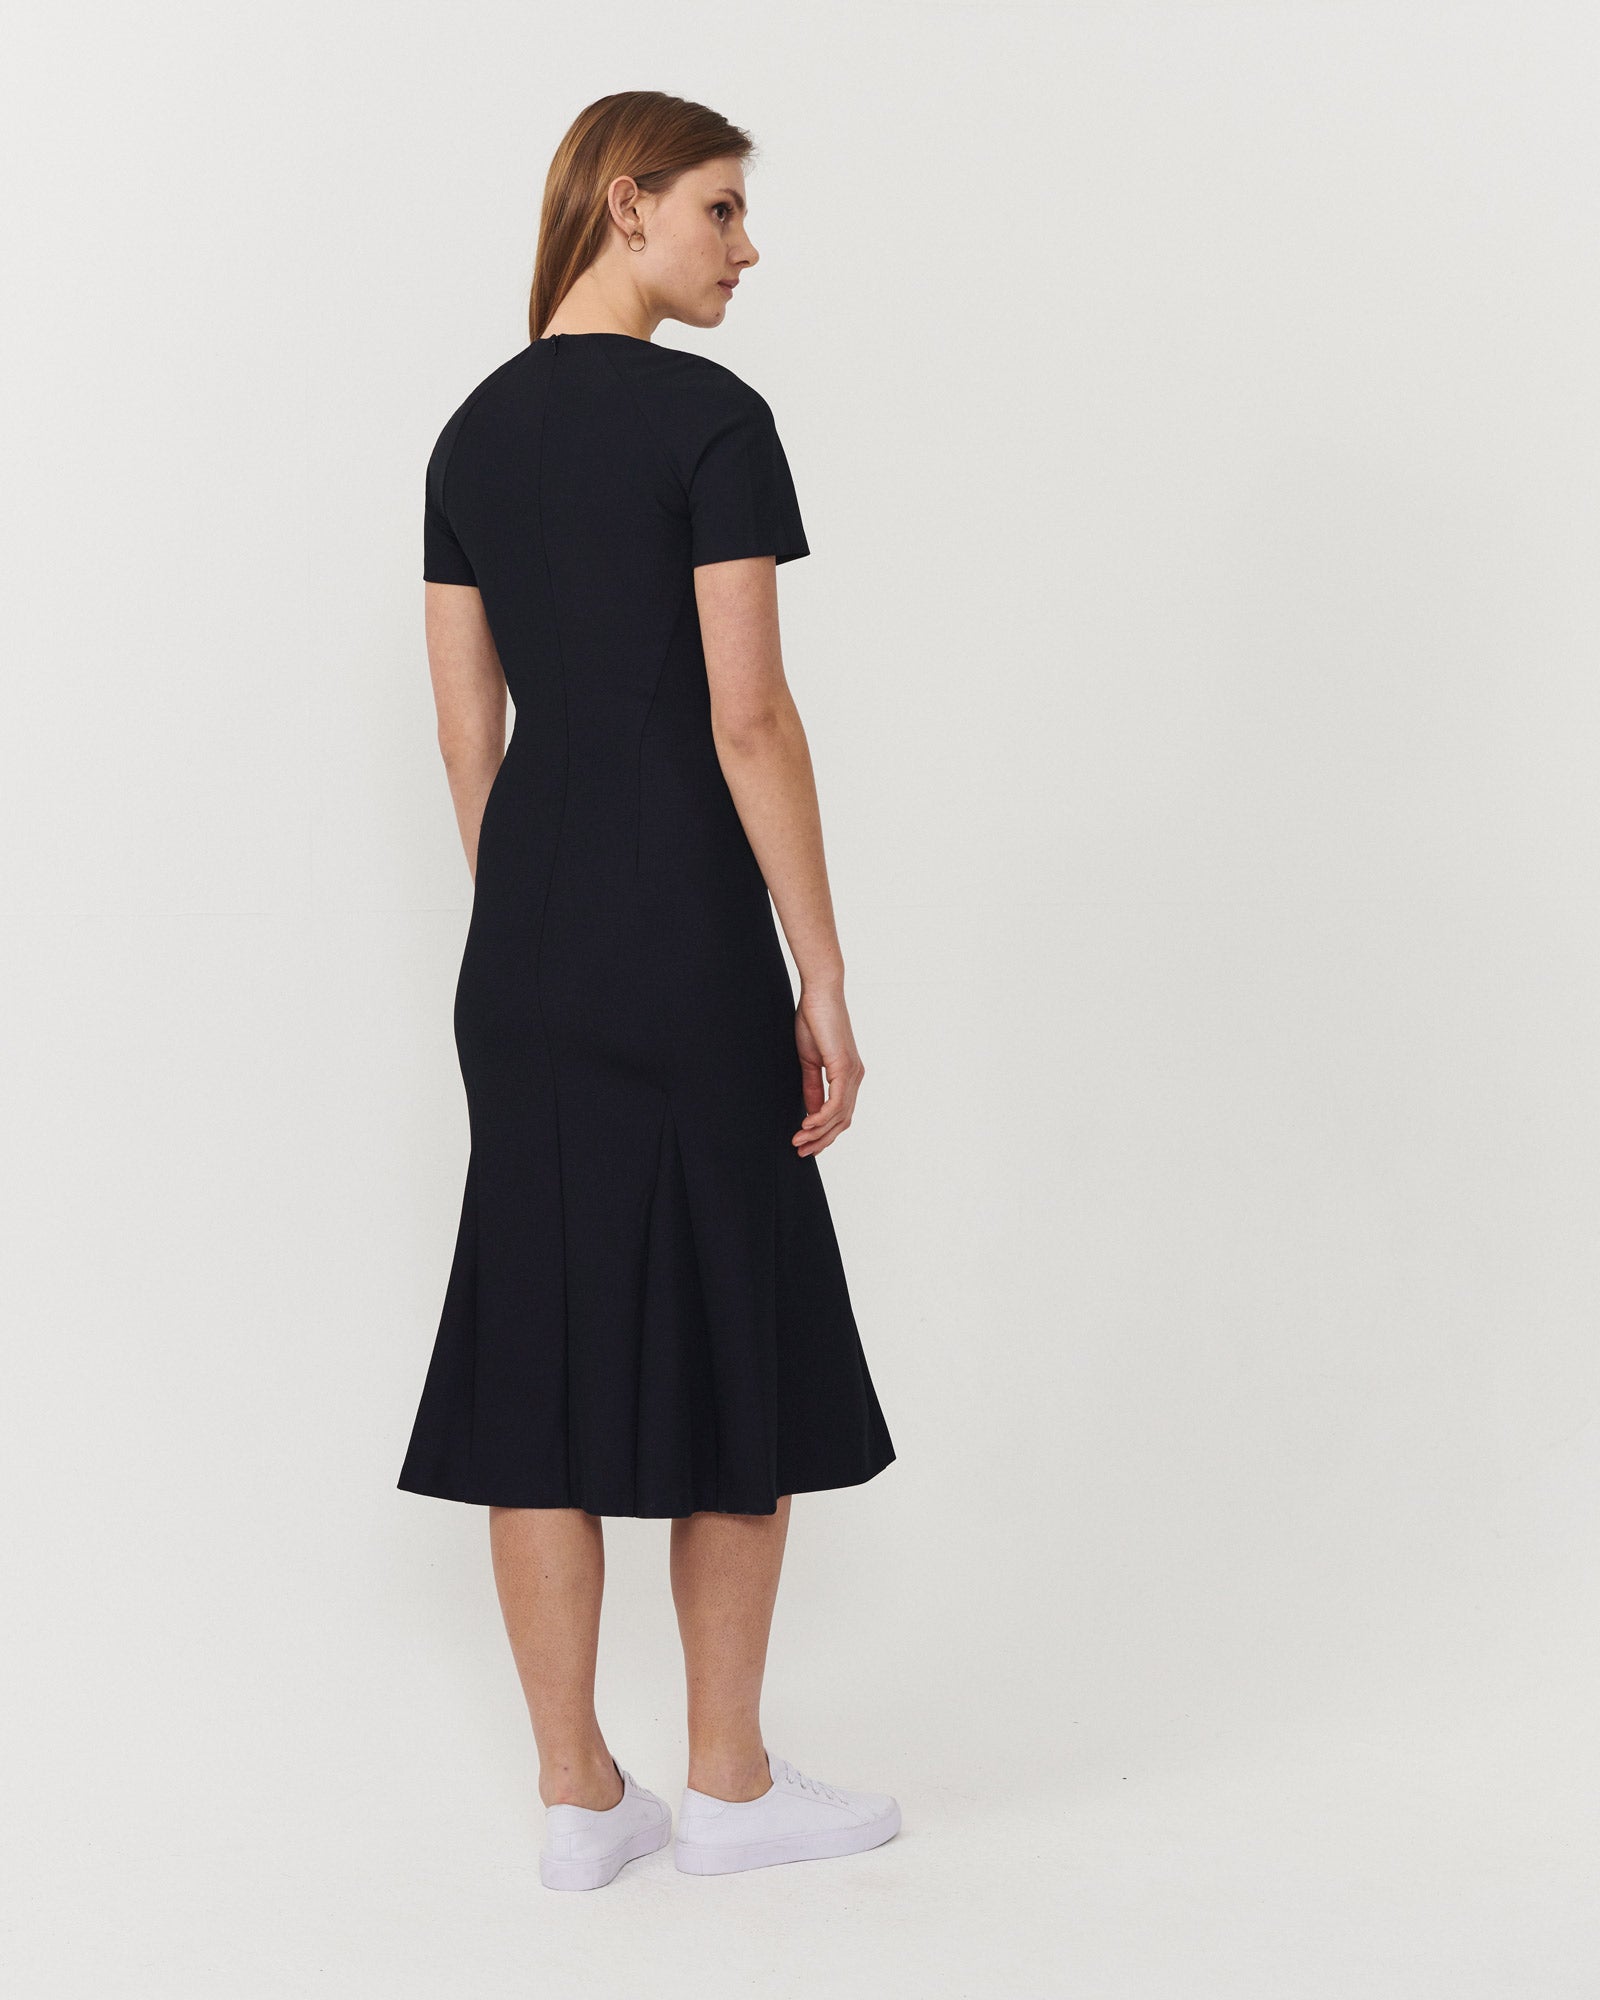 Notch Dress Black - Final Sale